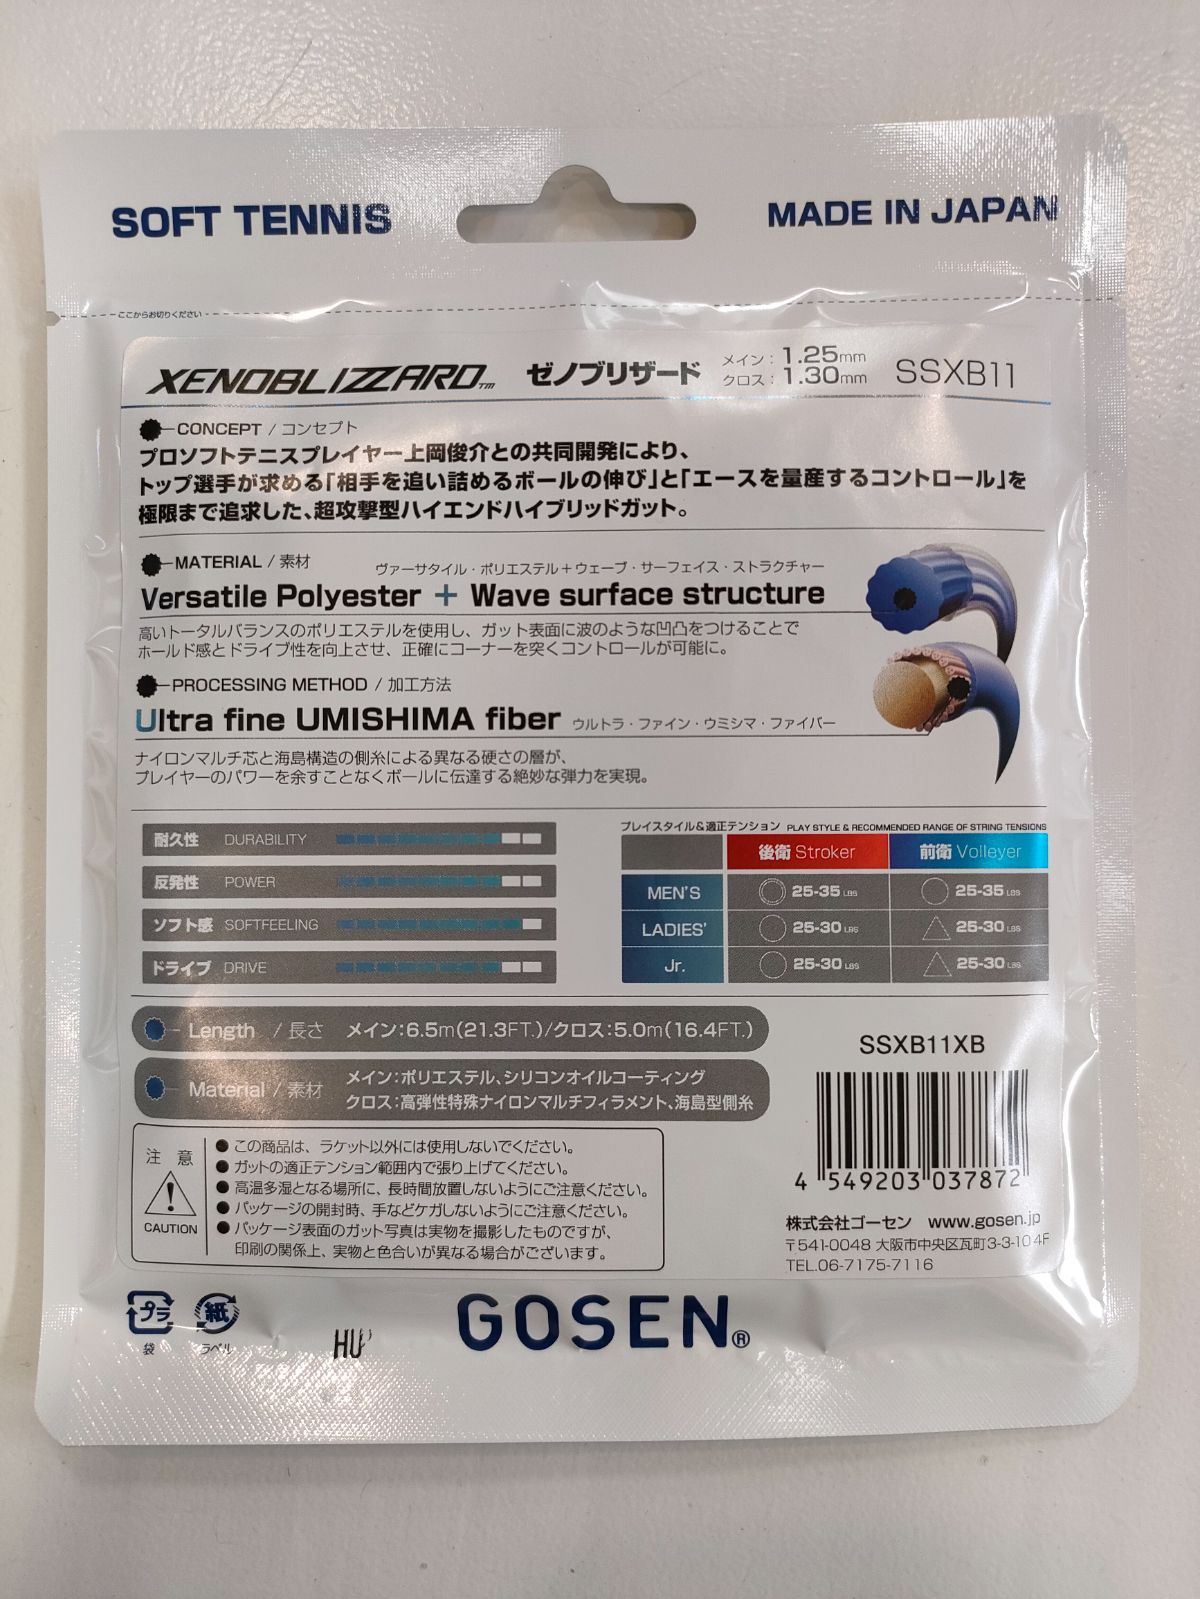 新製品【ソフトテニス】GOSEN ゼノブリザード - メルカリ